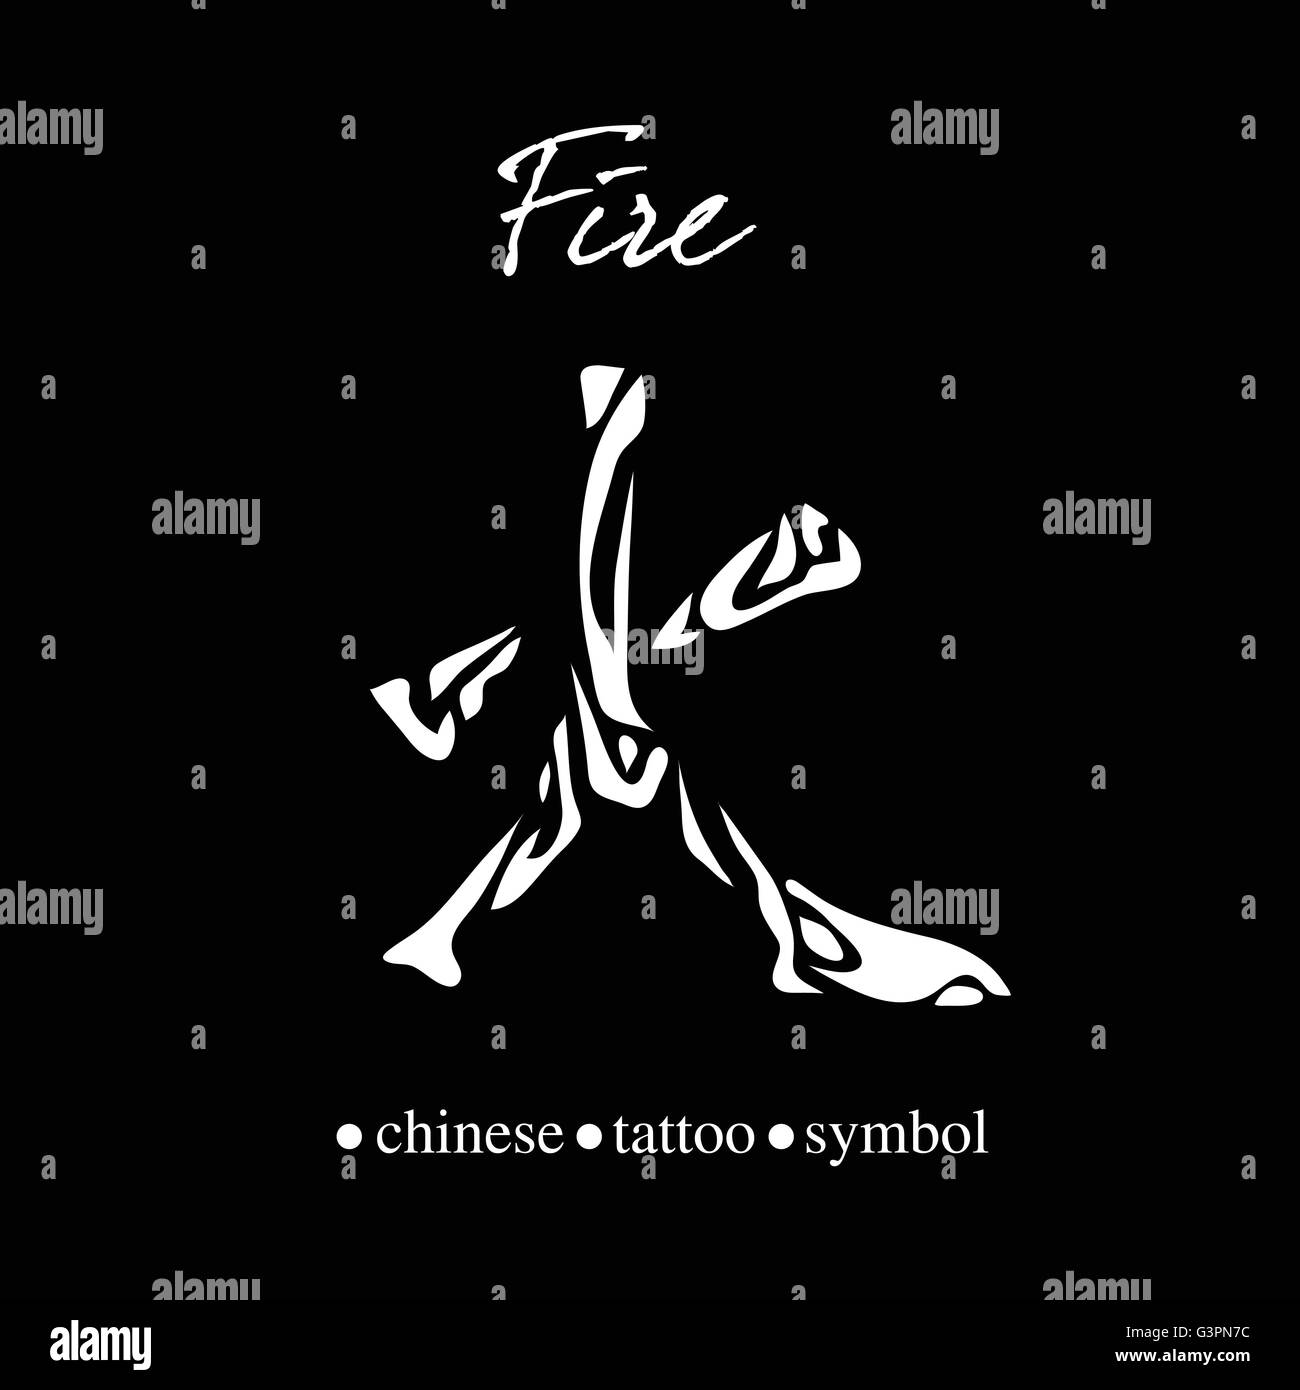 Chinesische Schriftzeichen Kalligraphie für Feuer Stock Vektor